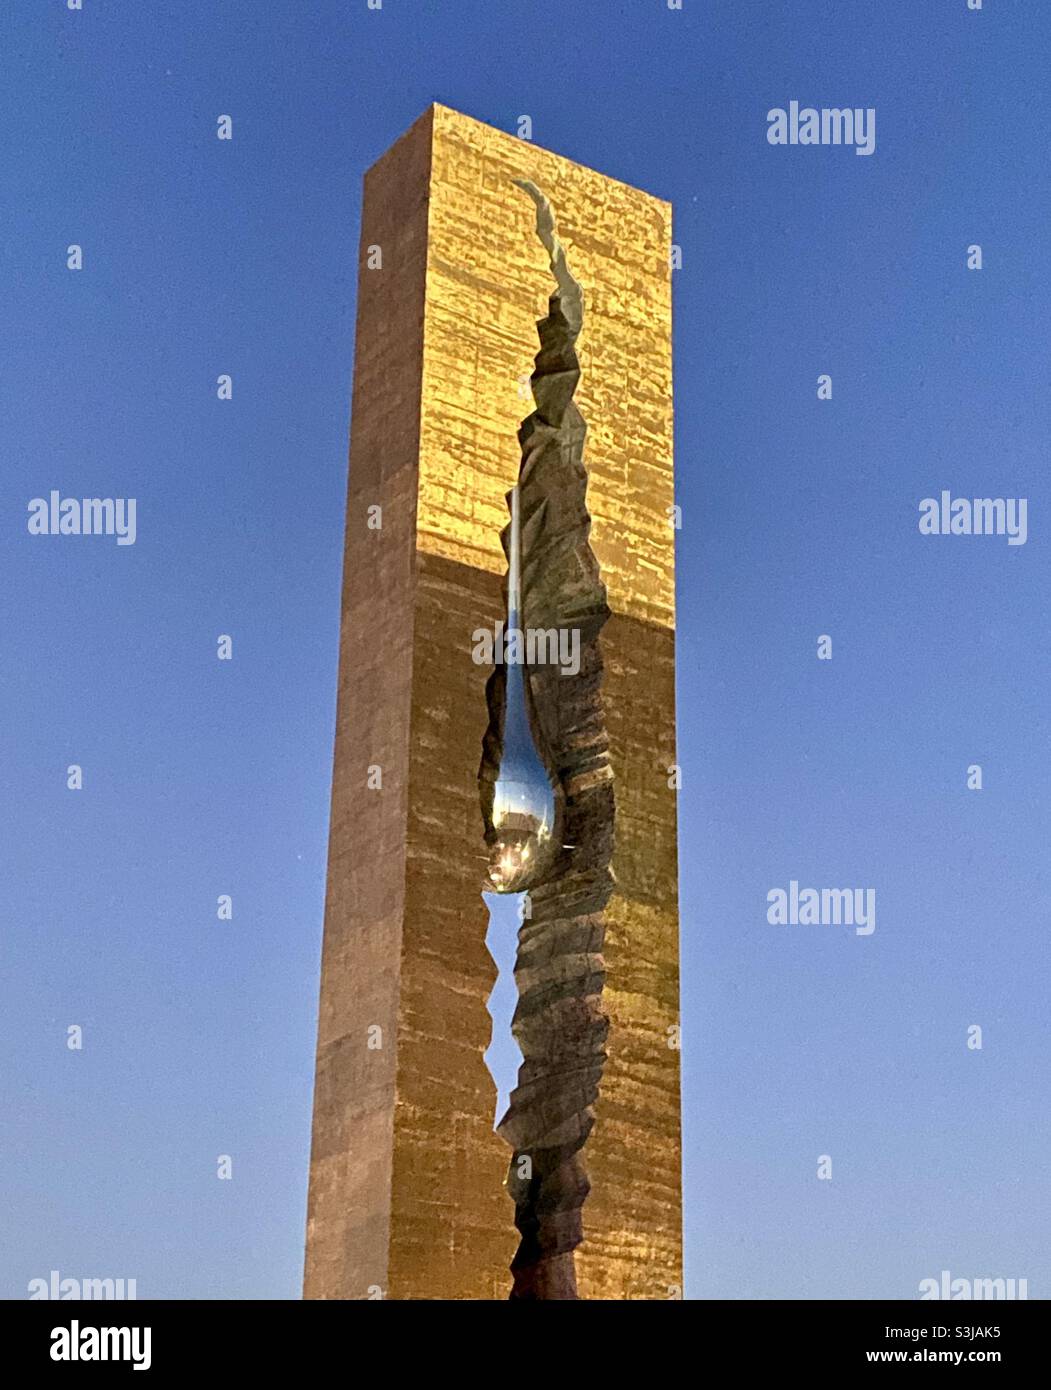 Teardrop monument in Bayonne, NJ Stock Photo